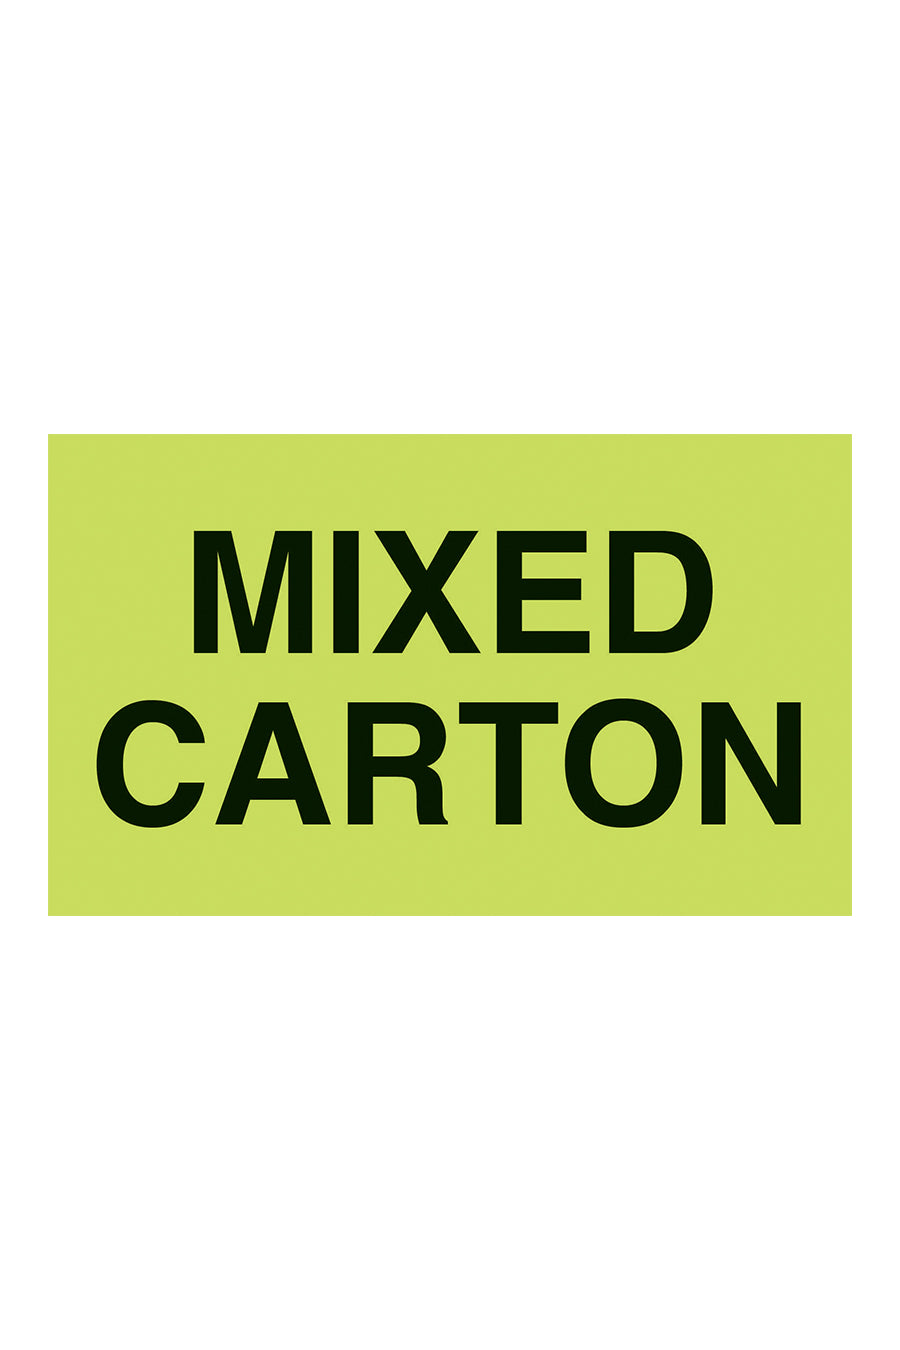 "Mixed Carton", 3" x 5", Fluorescent Green, 500 Labels/Roll